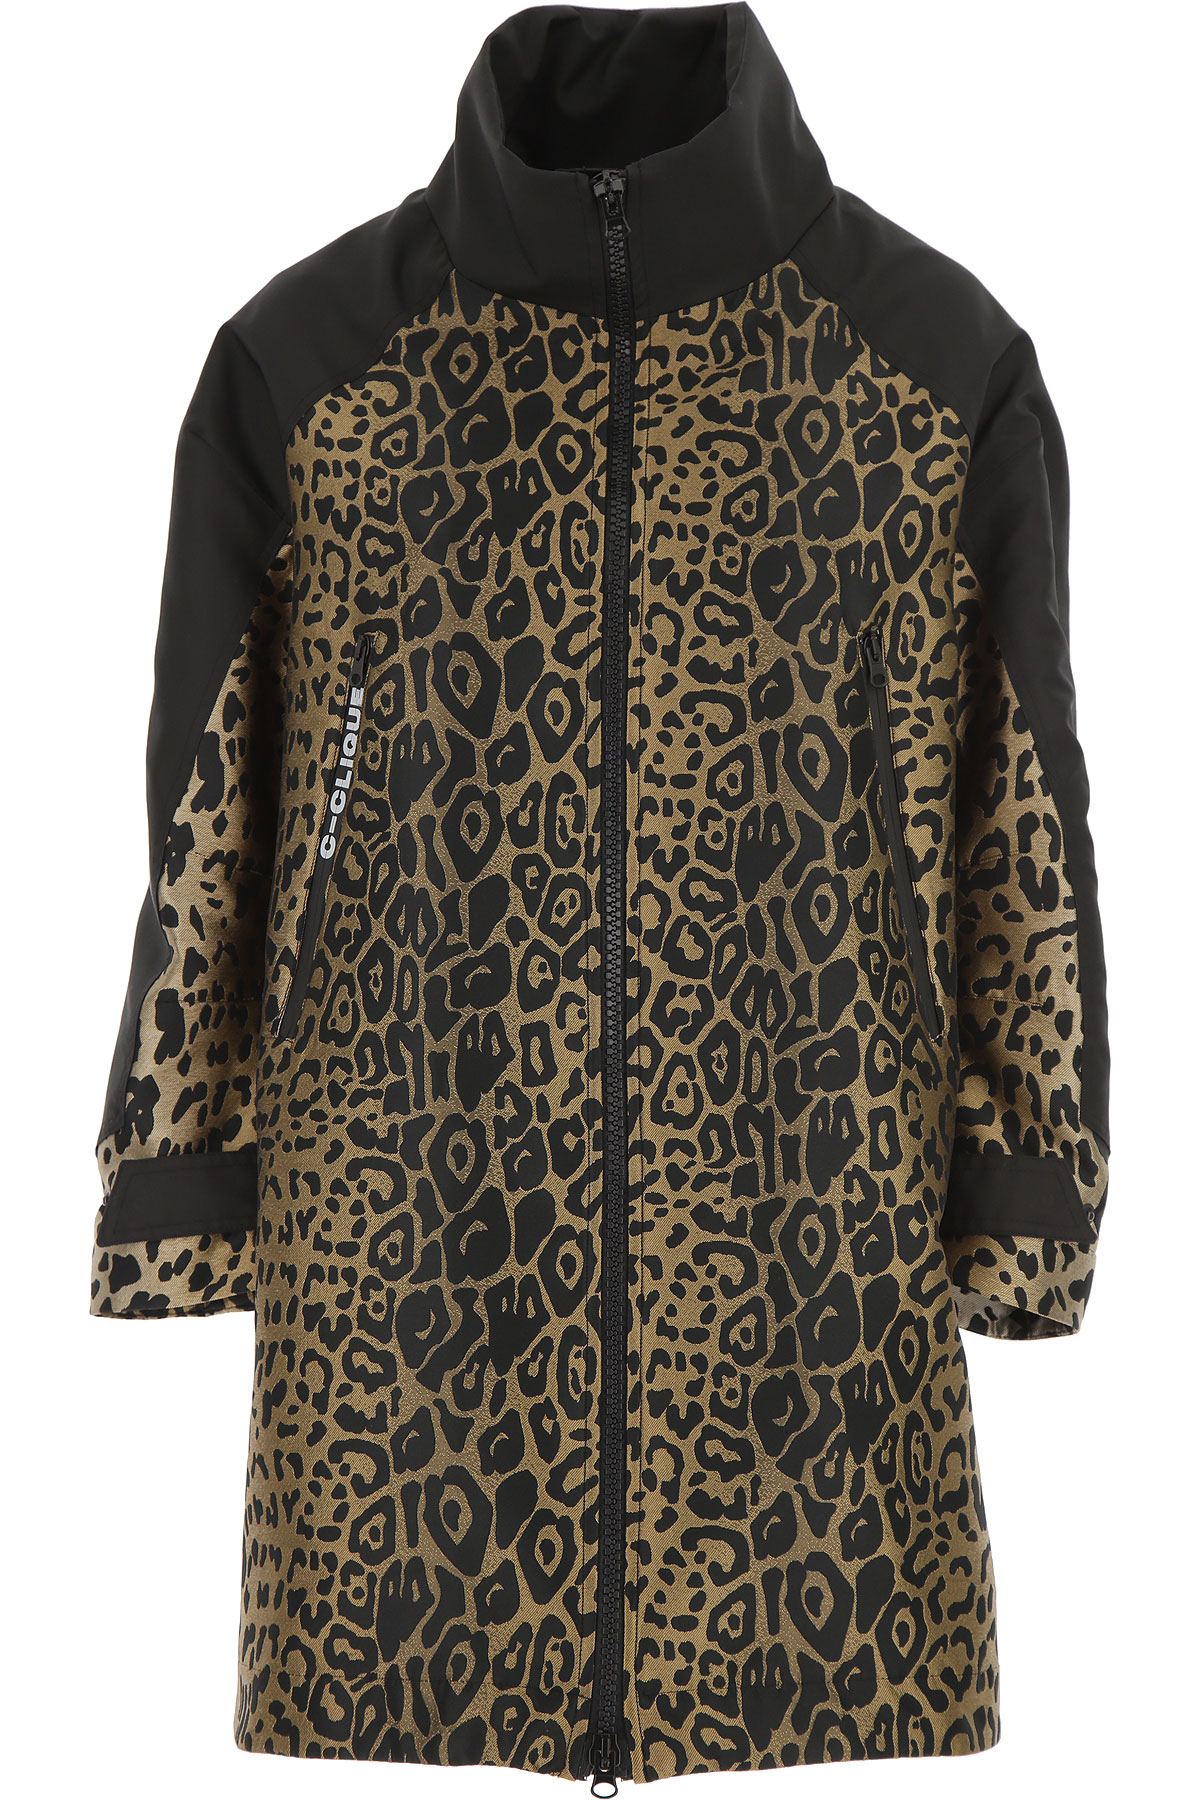 Pinko Jacke für Damen Günstig im Outlet Sale, Leopardenfarbig, Polyester, 2017, 38 M